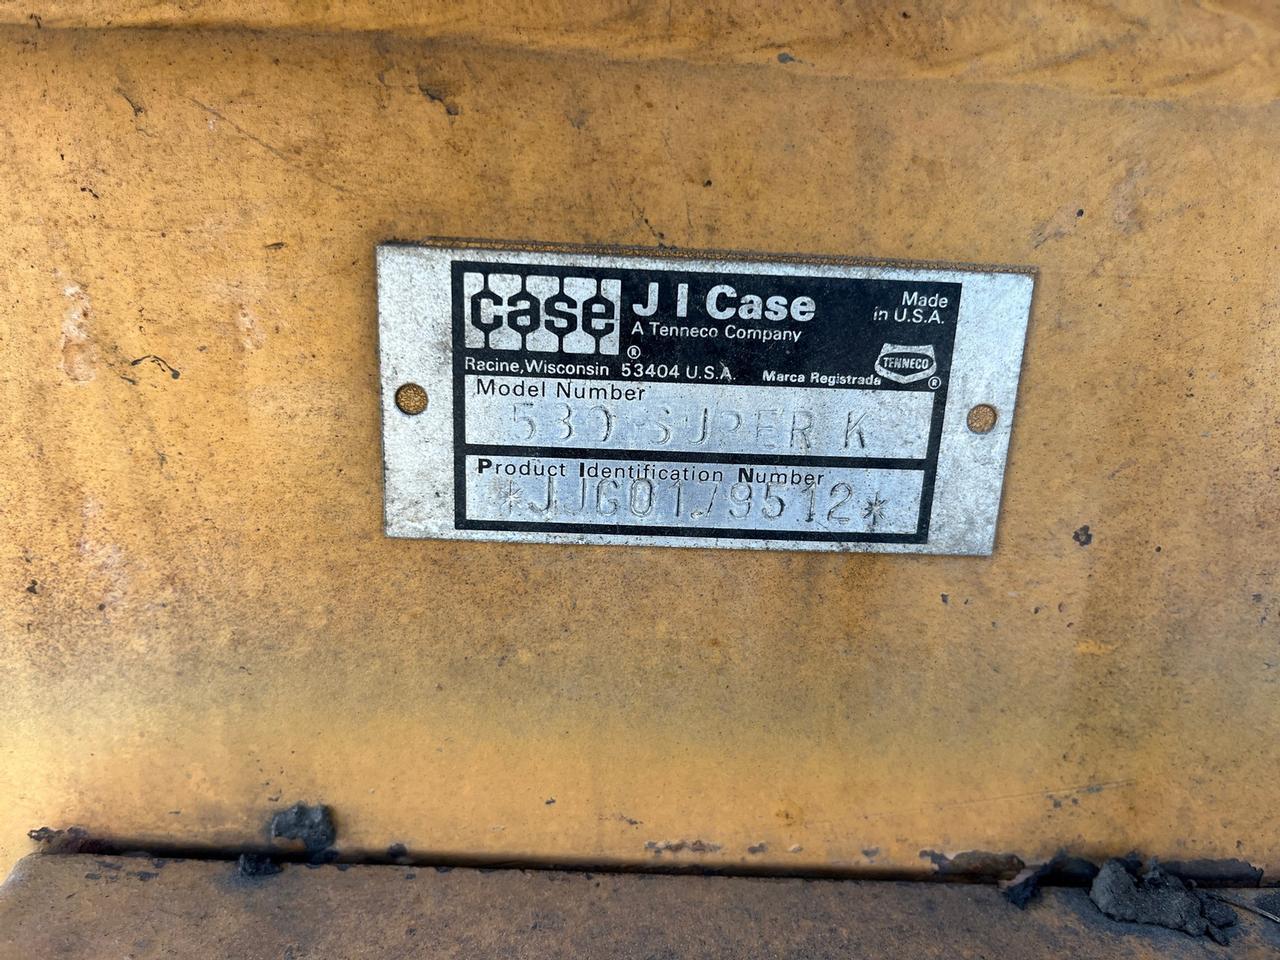 Case 580 Super K Loader Backhoe